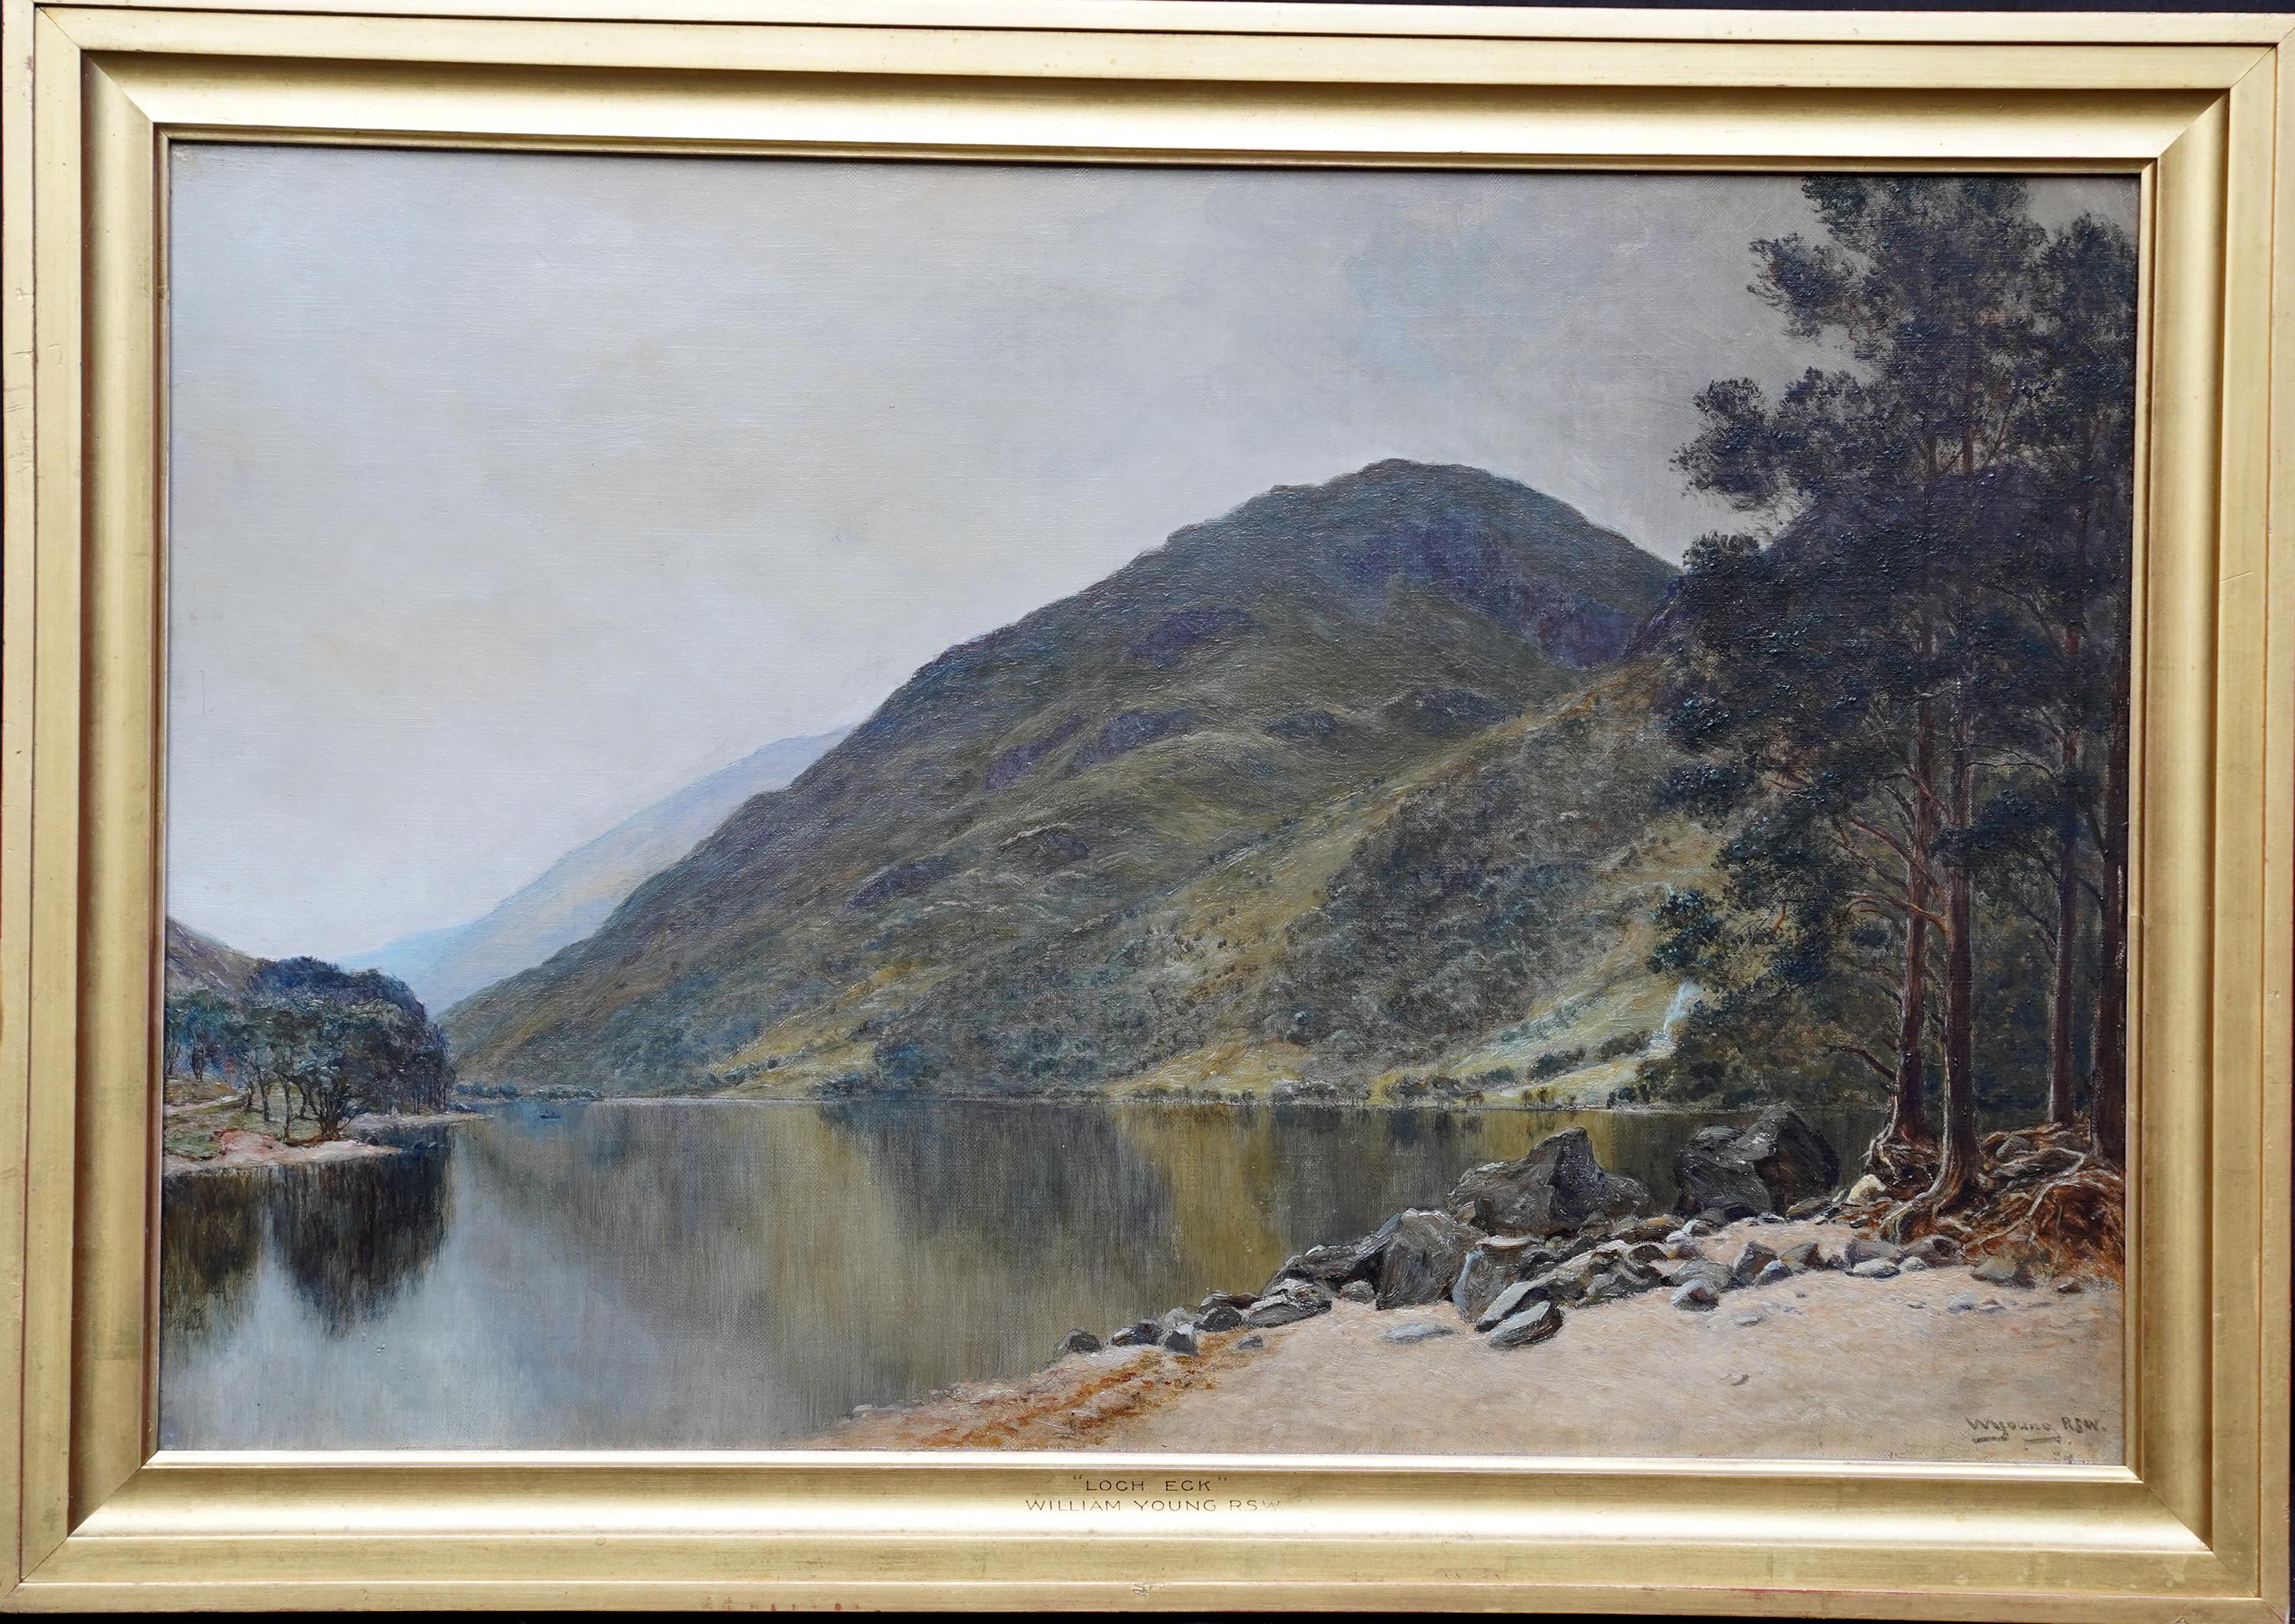 William Young Landscape Painting – Loch Eck, Schottland – schottisches edwardianisches Ölgemälde 